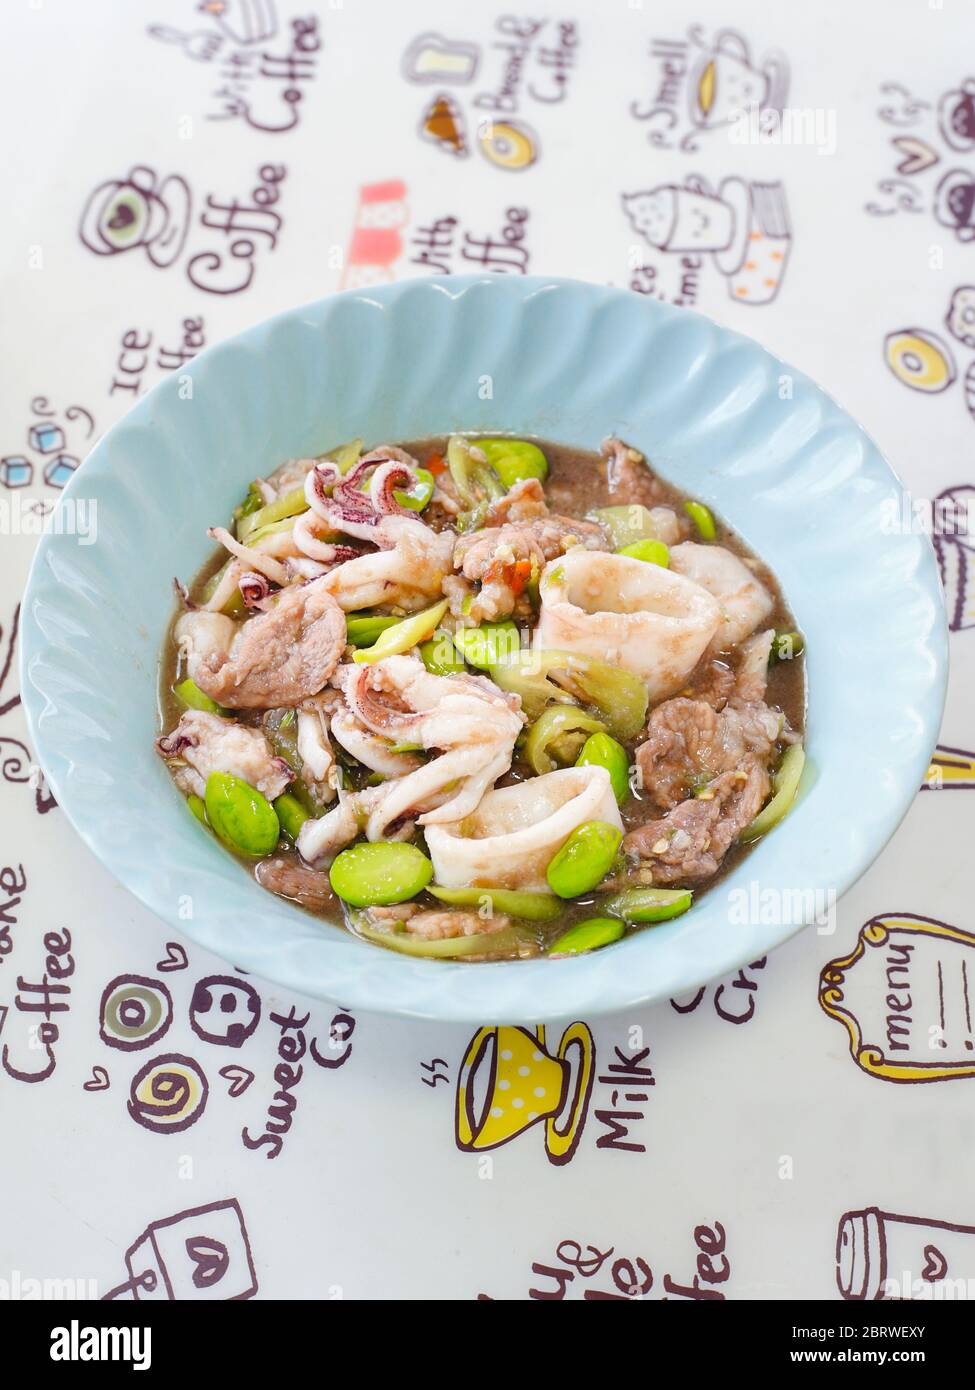 Colpo chiuso di cucina tailandese meridionale Stir fagiolo stink fritto con maiale e calamari. Foto Stock